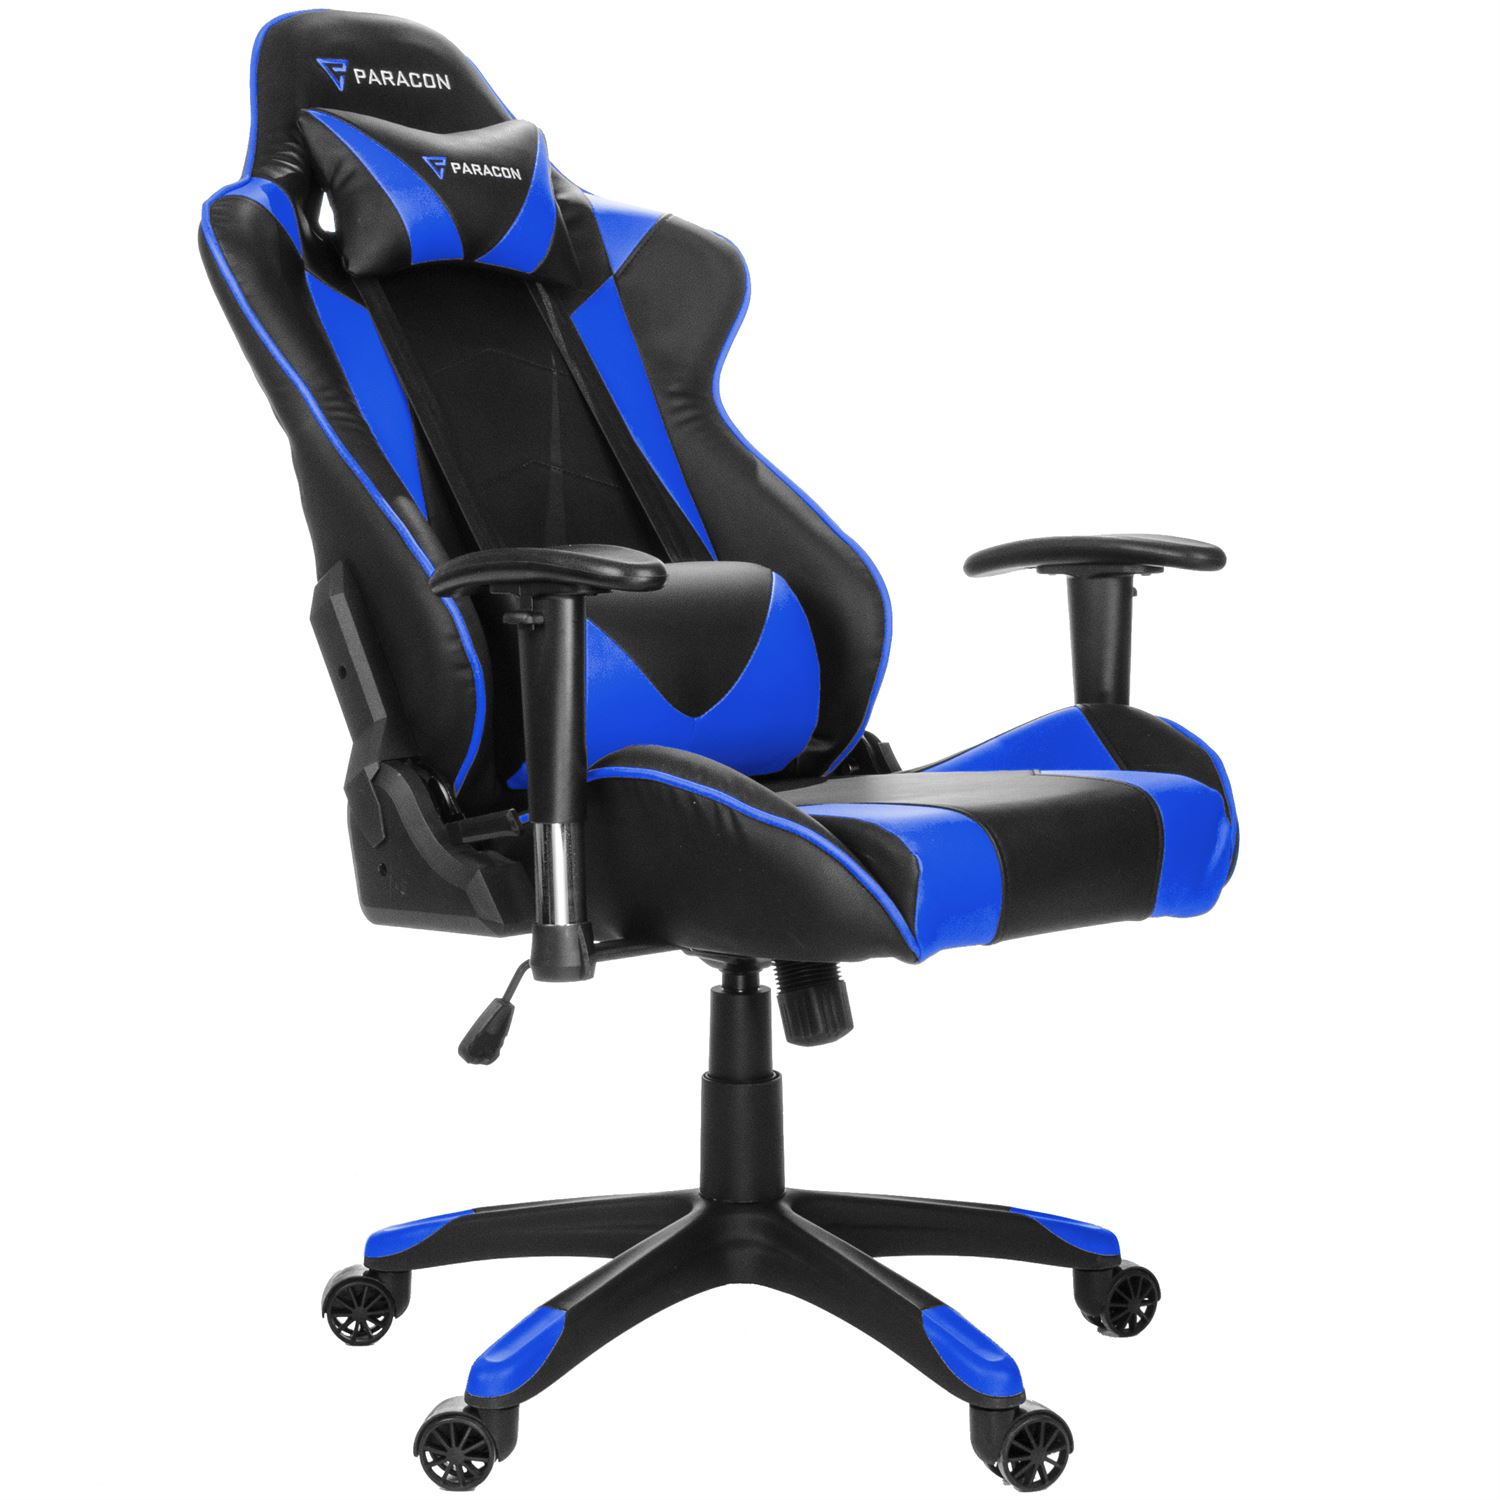 Stuhl und Nackenkissen Paracon blau. PARACON BY EBUY24 Gaming Knight inkl. Lendenstütze Blau Gamerstuhl,